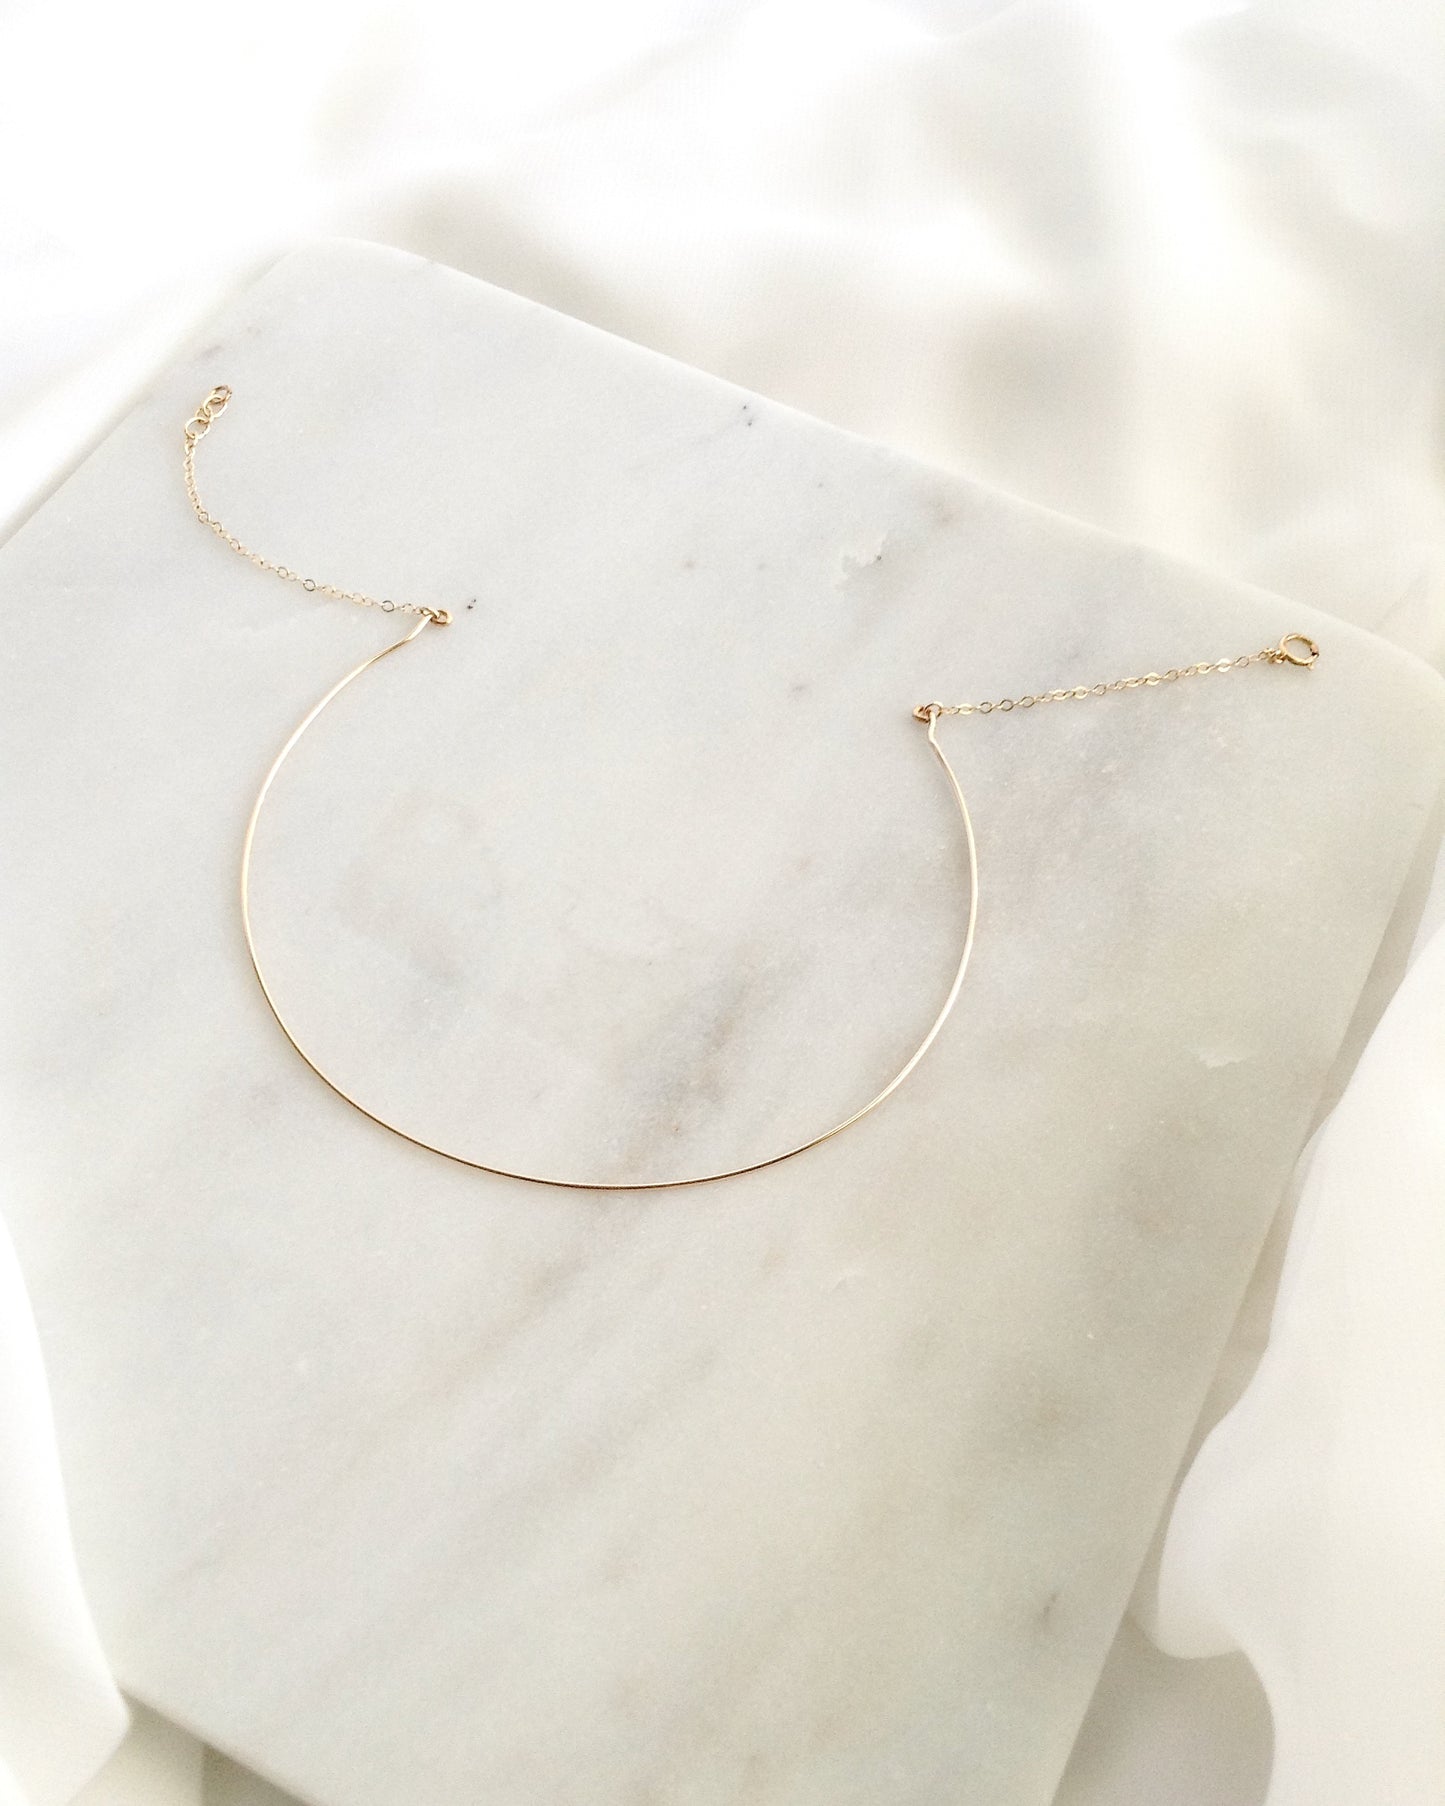 Minimalist Choker Necklace | Dainty Simple Everyday Choker | IB Jewelry